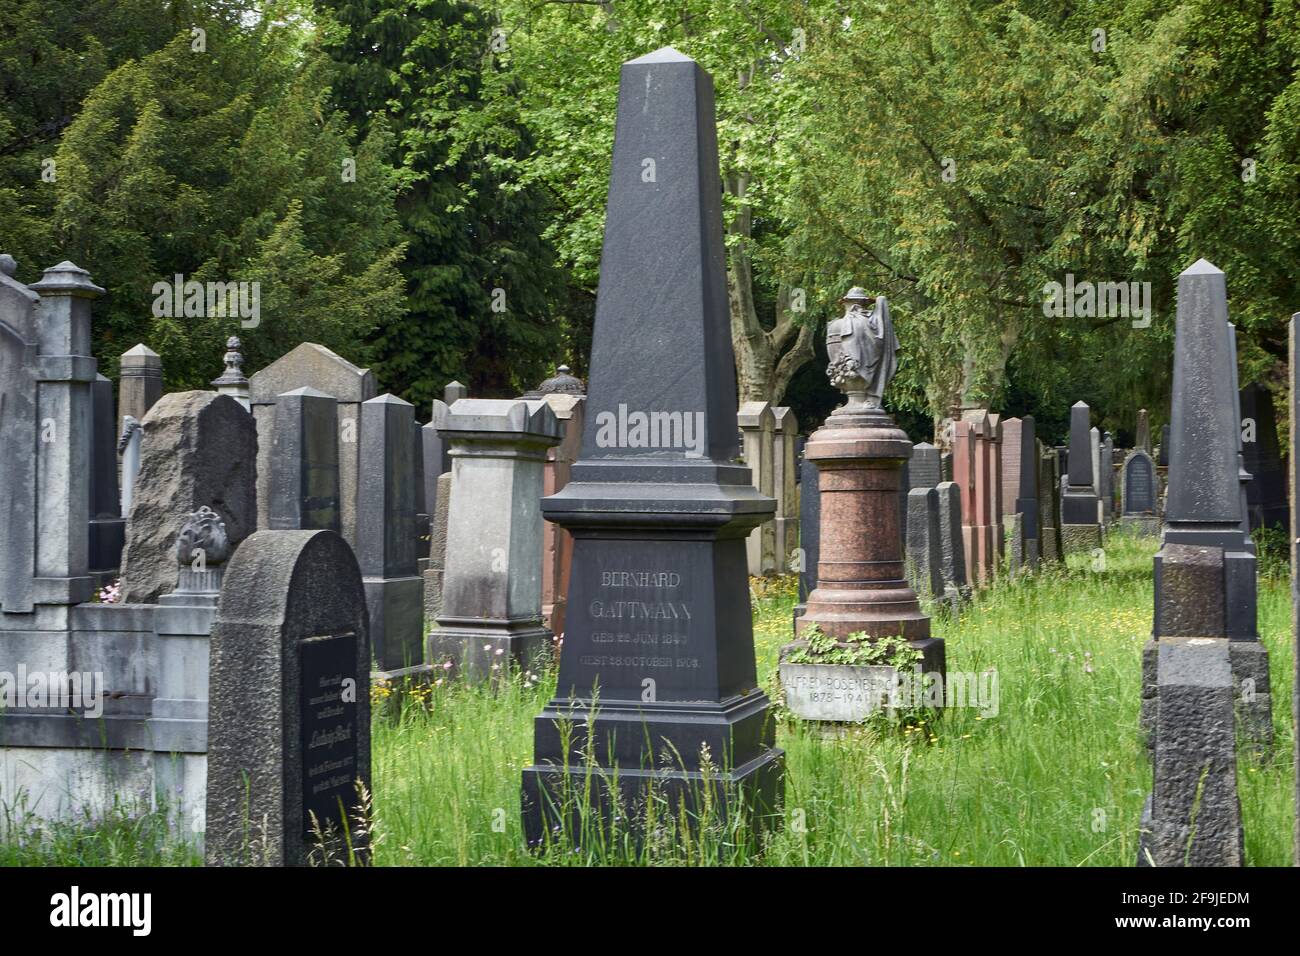 Grabmale, Alter jüdischer Friedhof Rat-Beil-Straße, Am Hauptfriedhof, Frankfurt am Main, Hessen, Deutschland Foto Stock